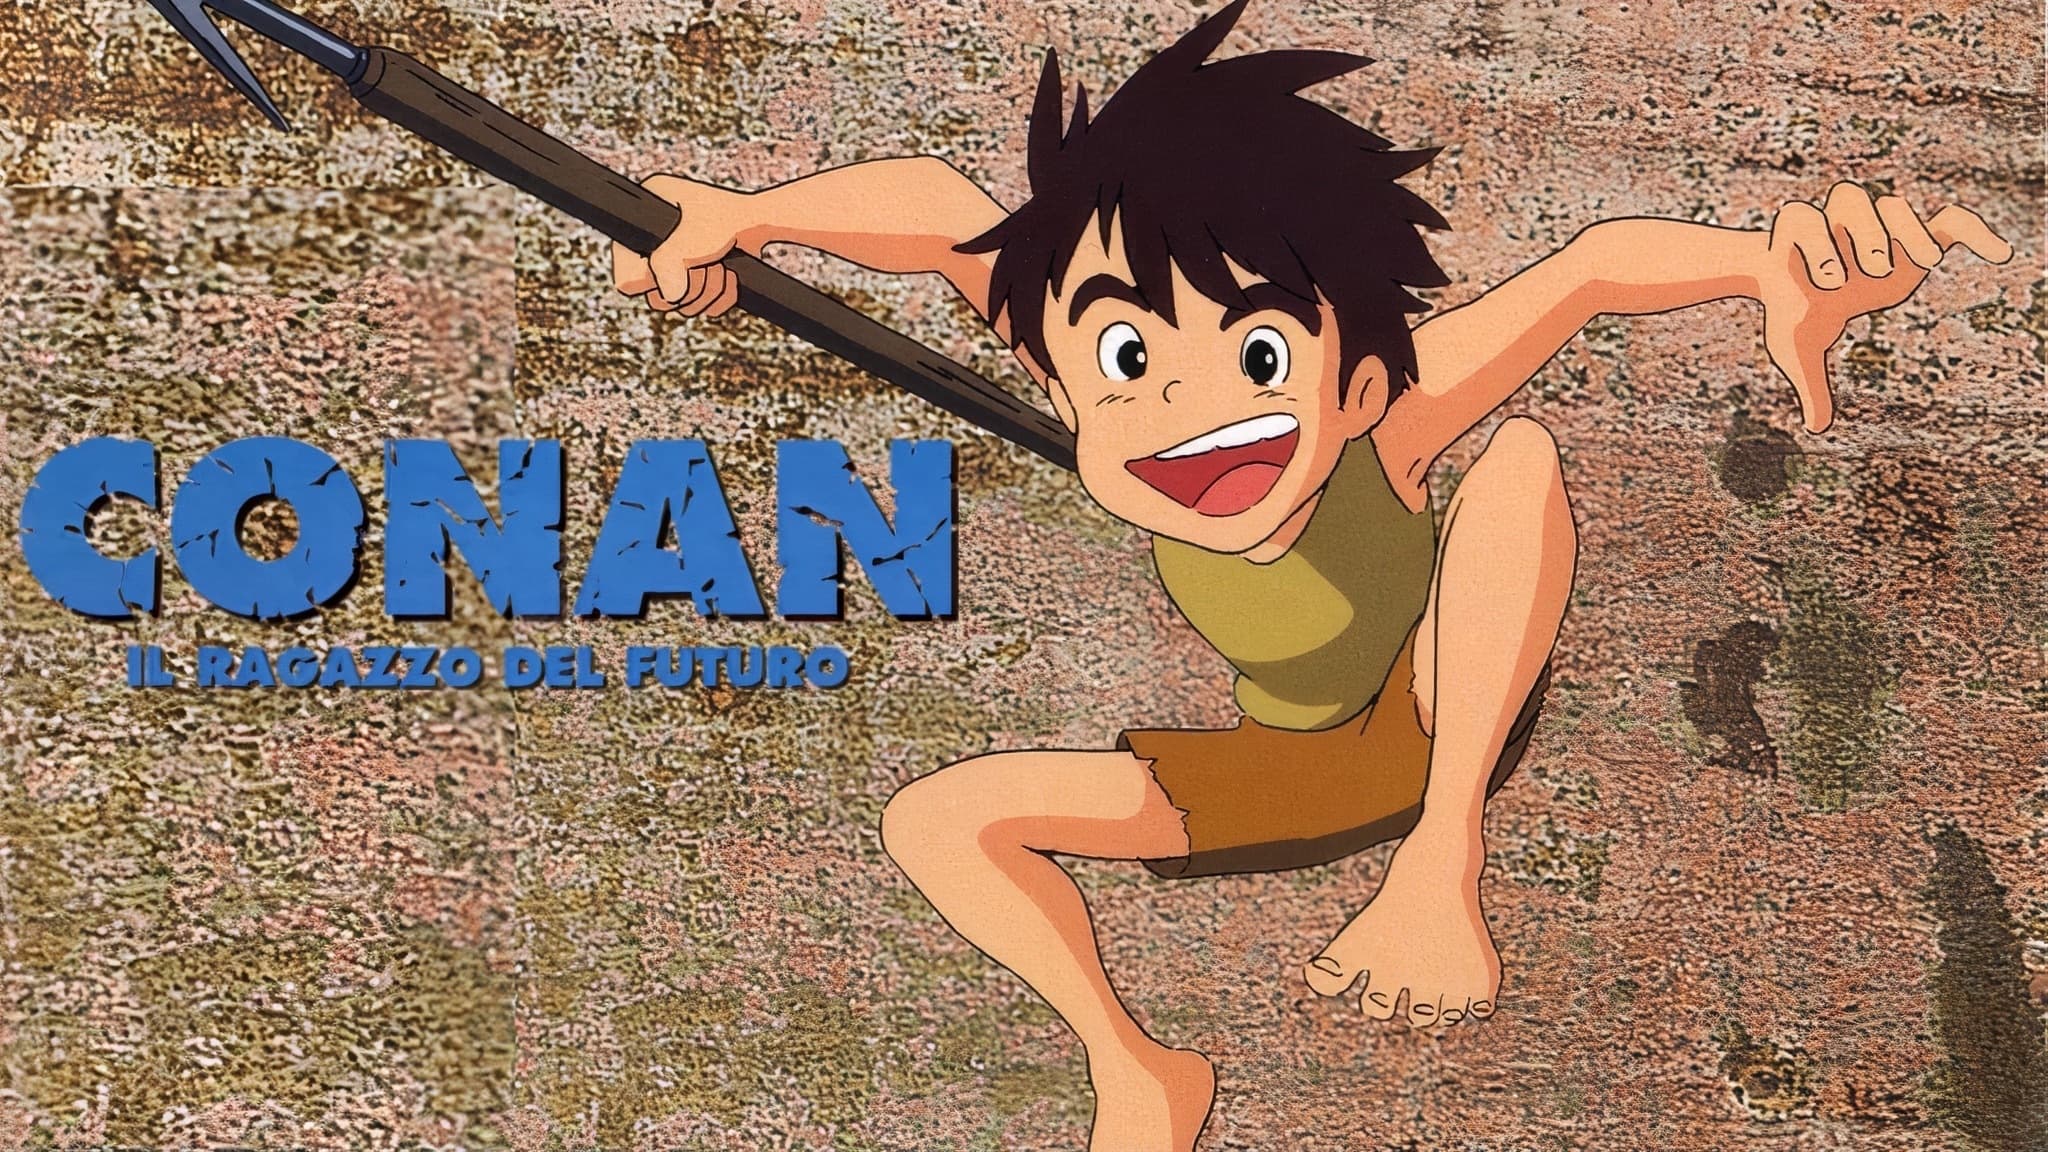 Conan, the Boy in Future